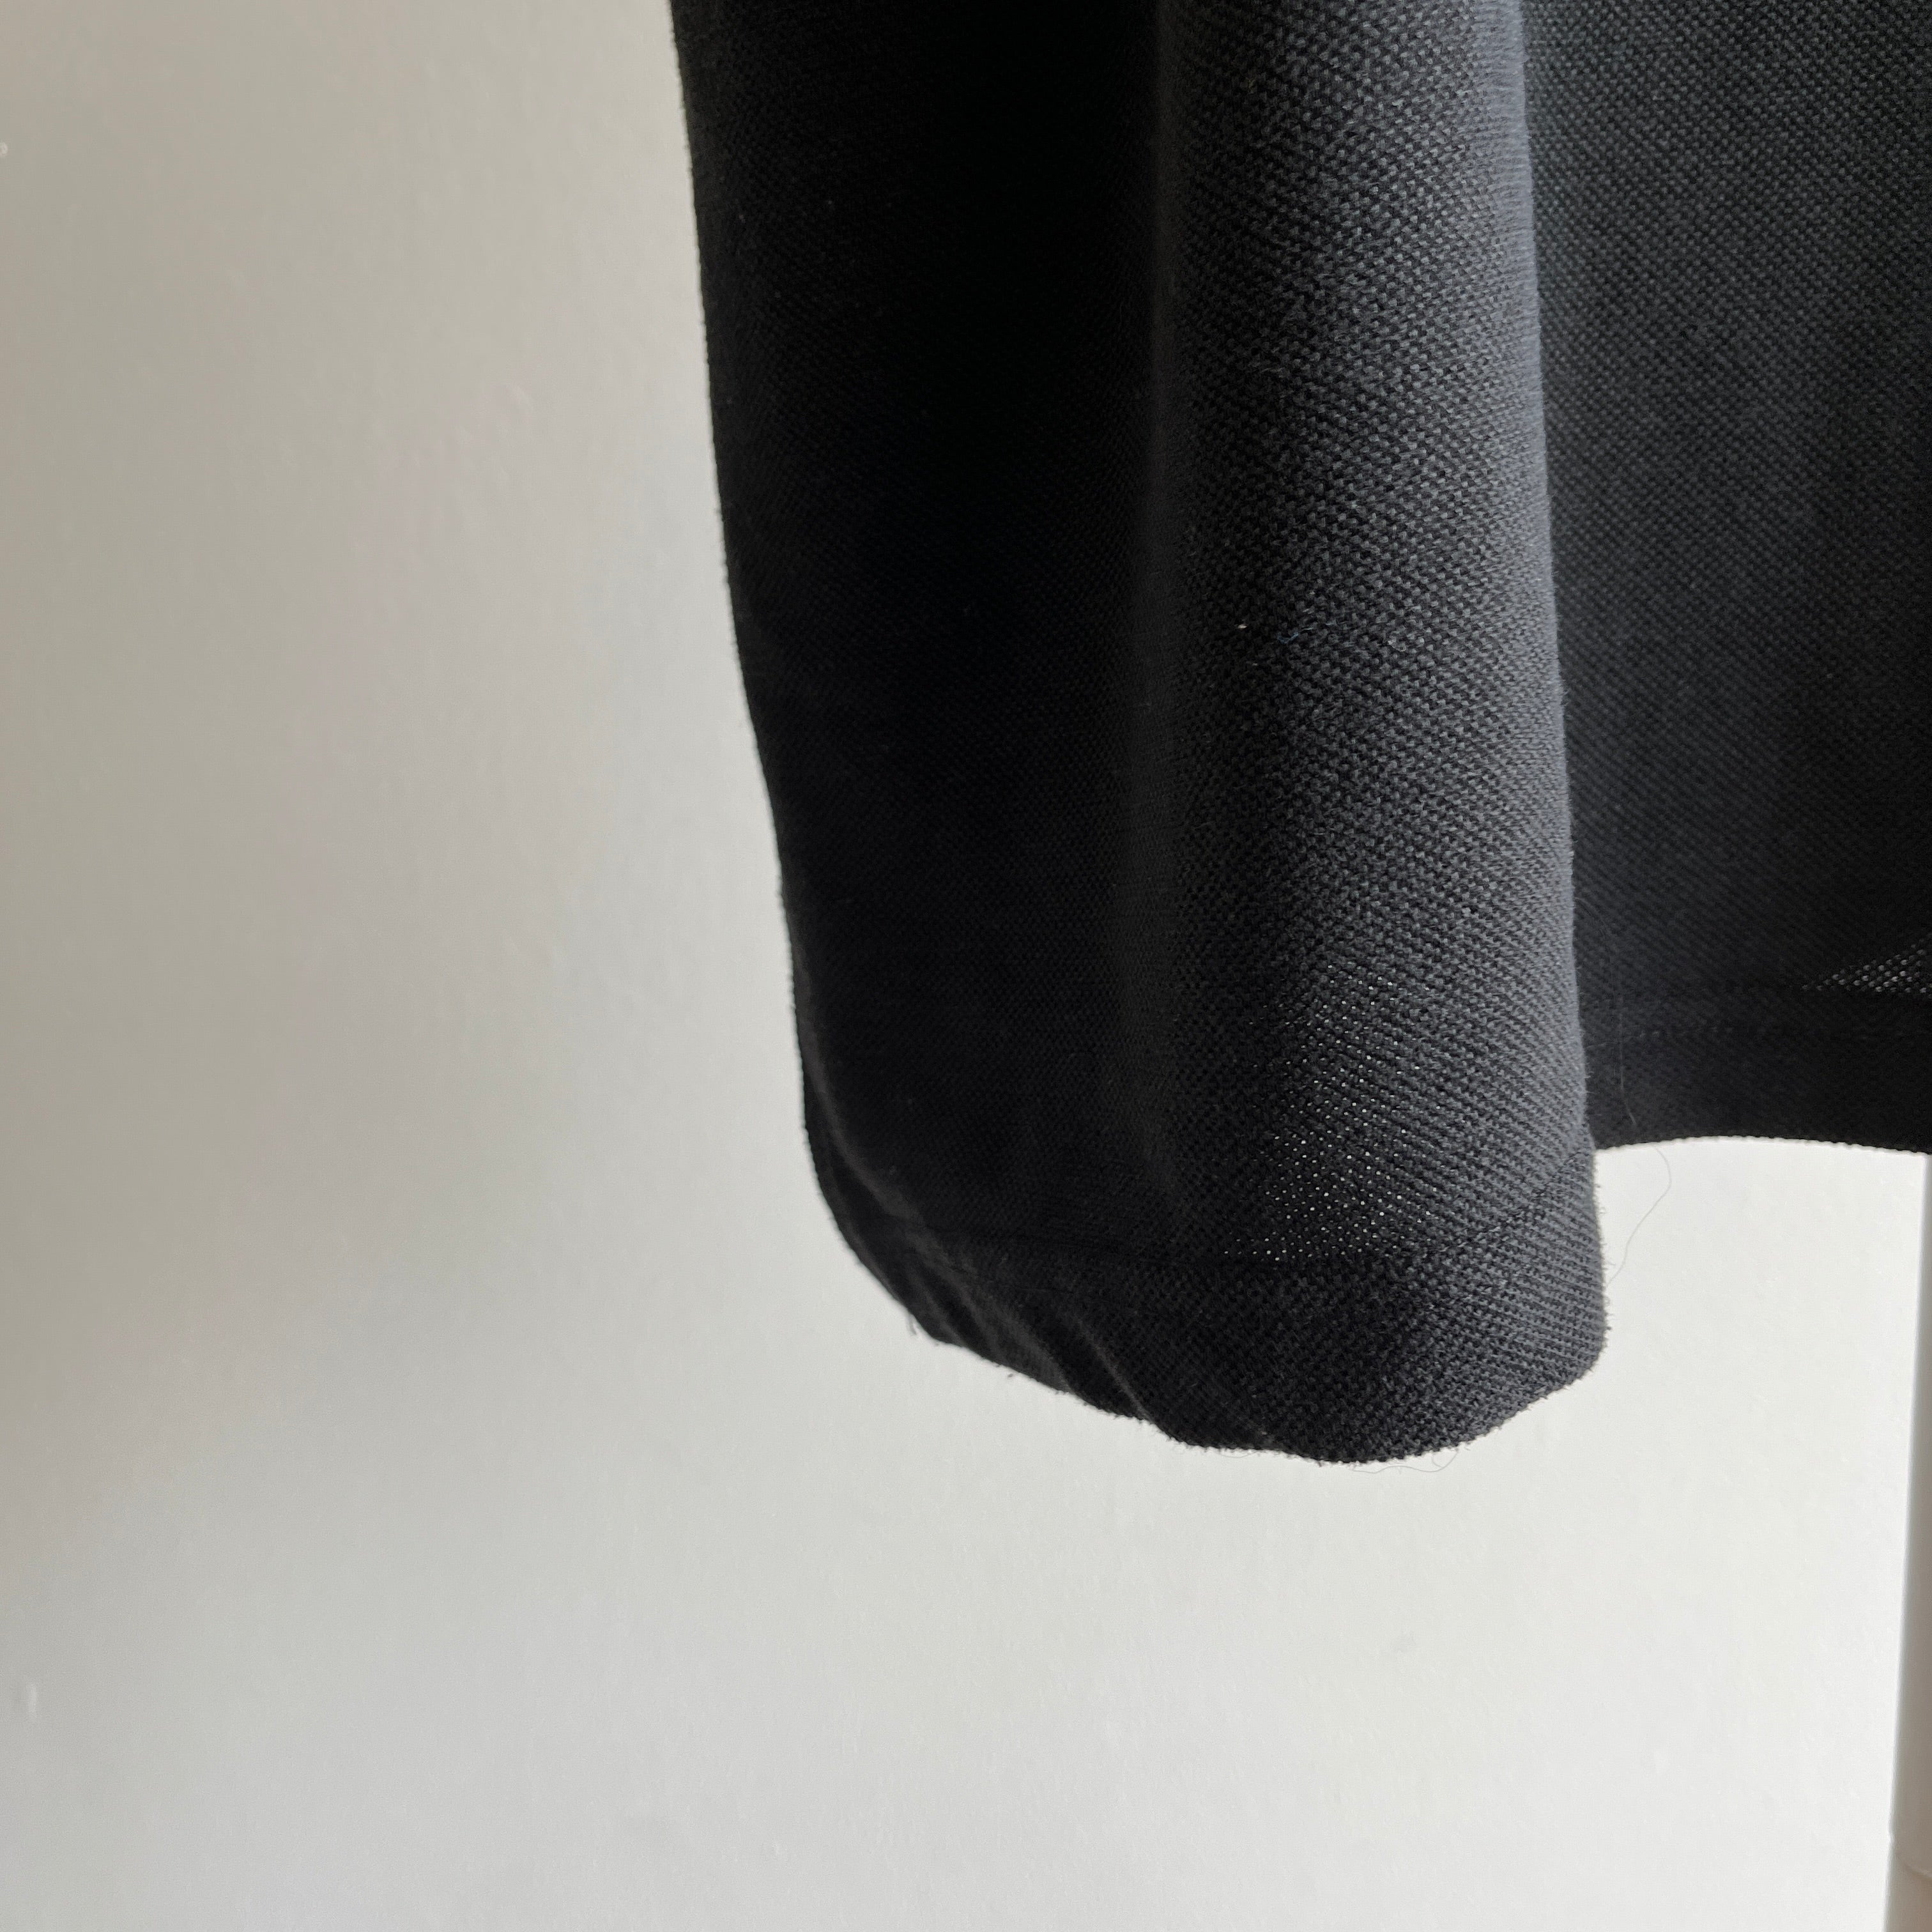 1990s XXL Ralph Lauren Blank Black Polo T-Shirt